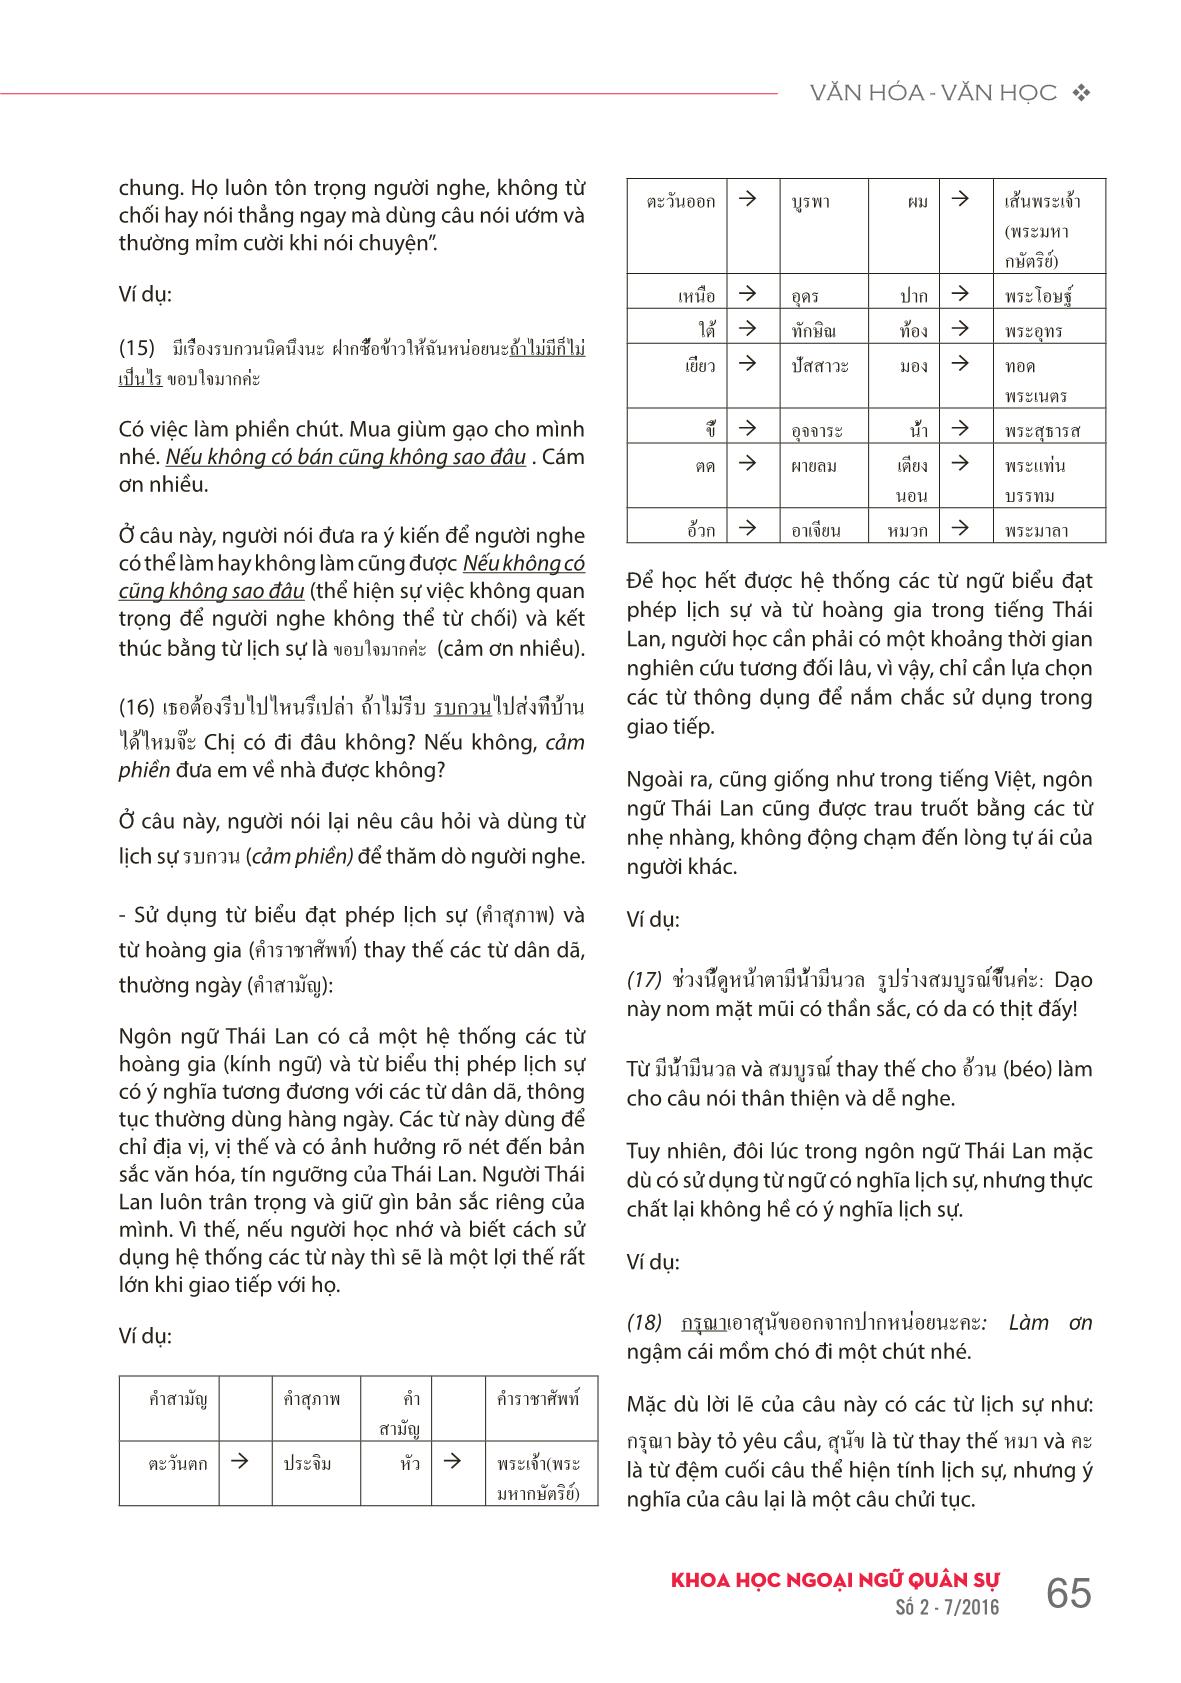 Từ ngữ biểu đạt phép lịch sự trong tiếng Thái Lan trang 4